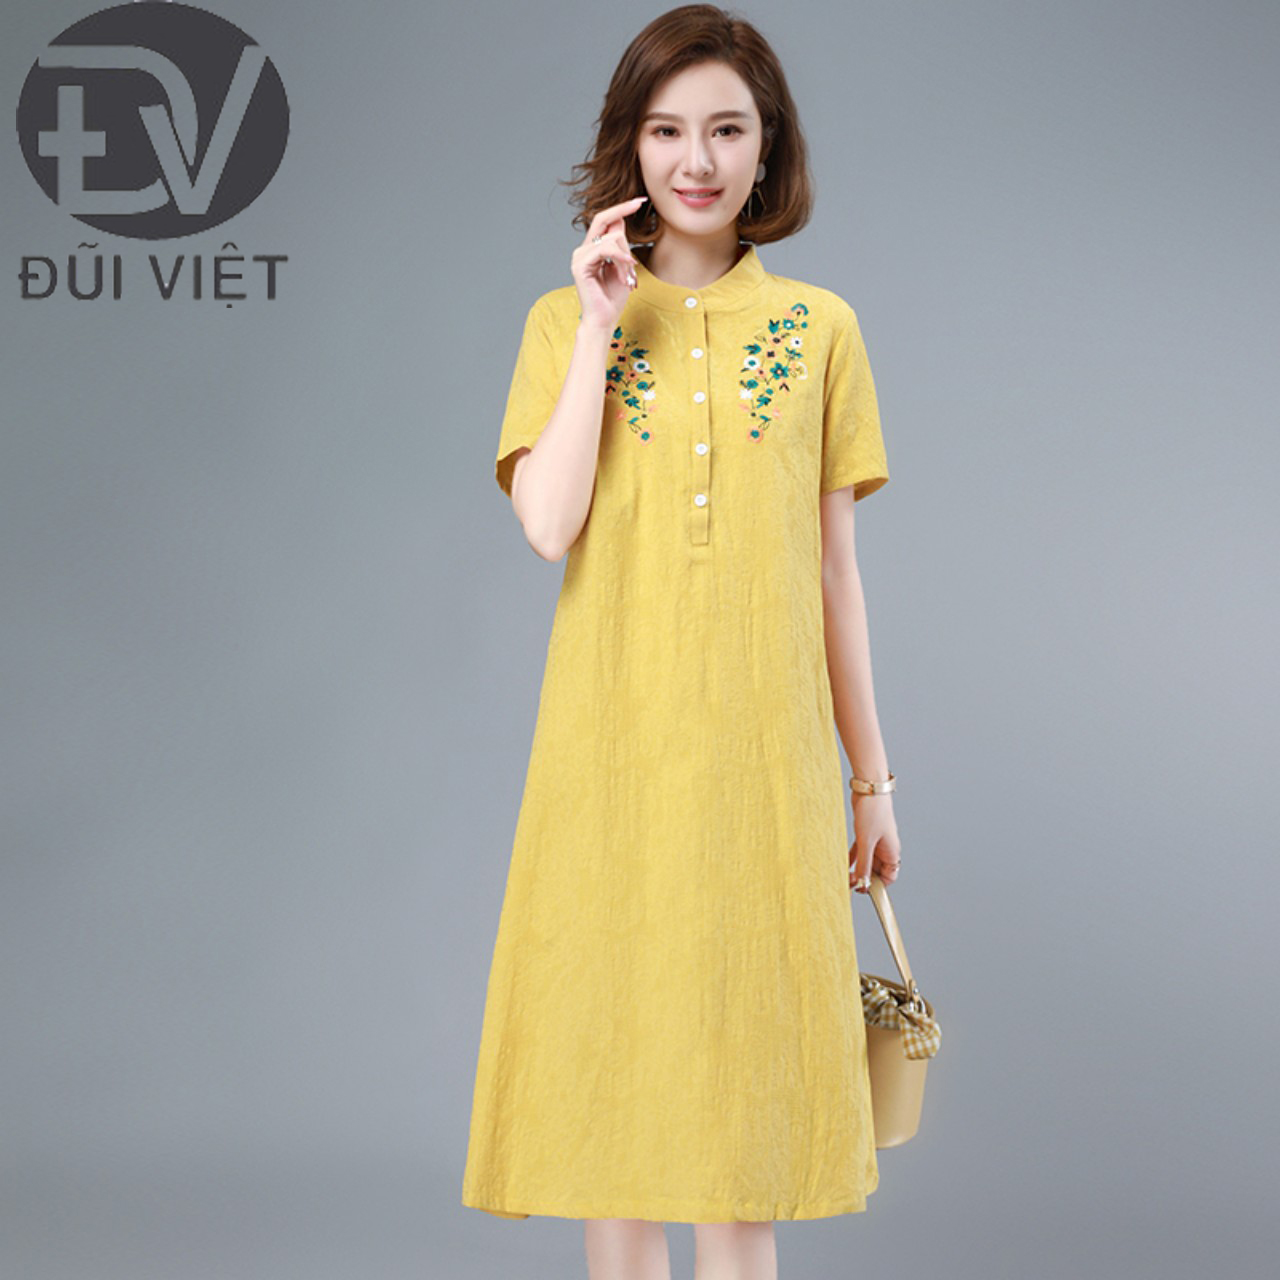 Váy linen vàng thêu hoa trước ngực dáng dài, đầm cổ tàu ngắn tay Đũi Việt